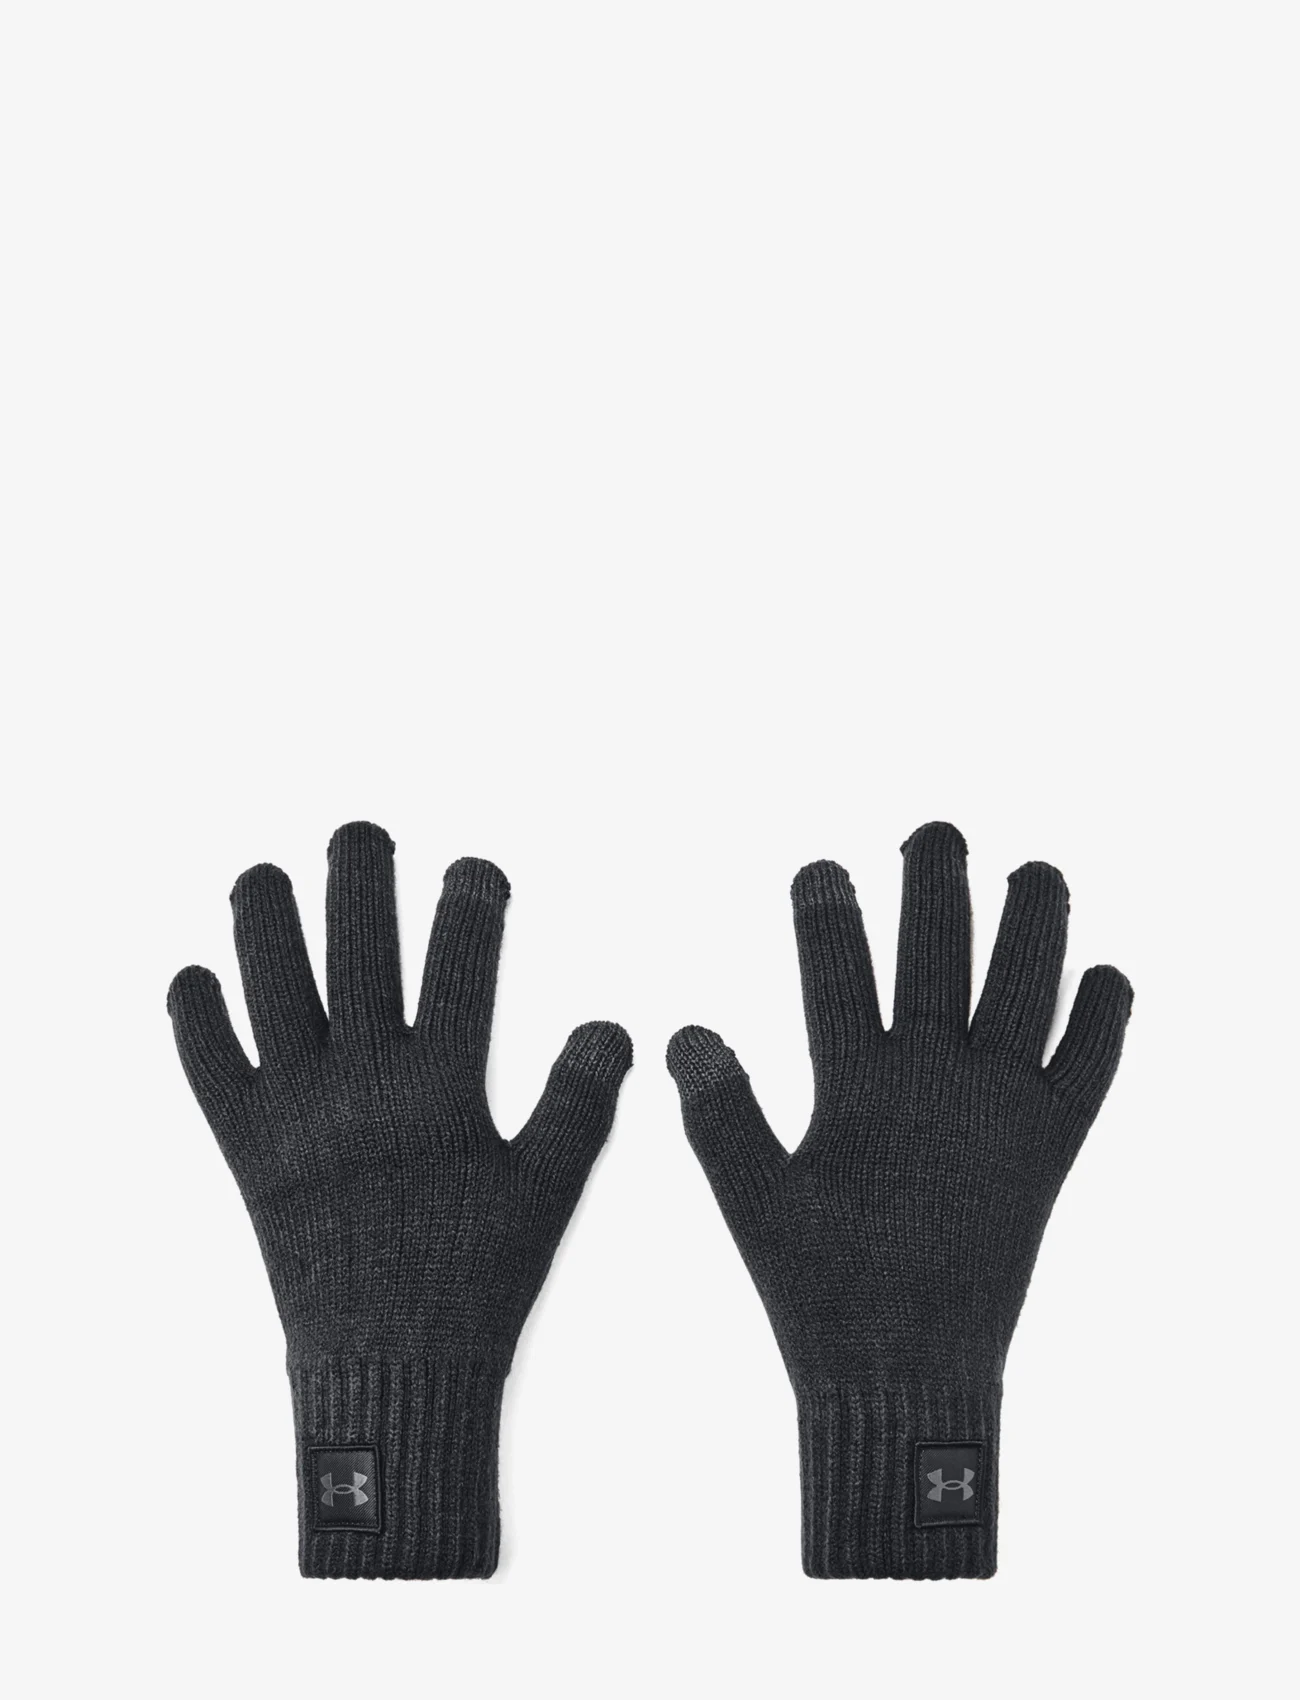 Under Armour - UA Halftime Gloves - mažiausios kainos - black - 1